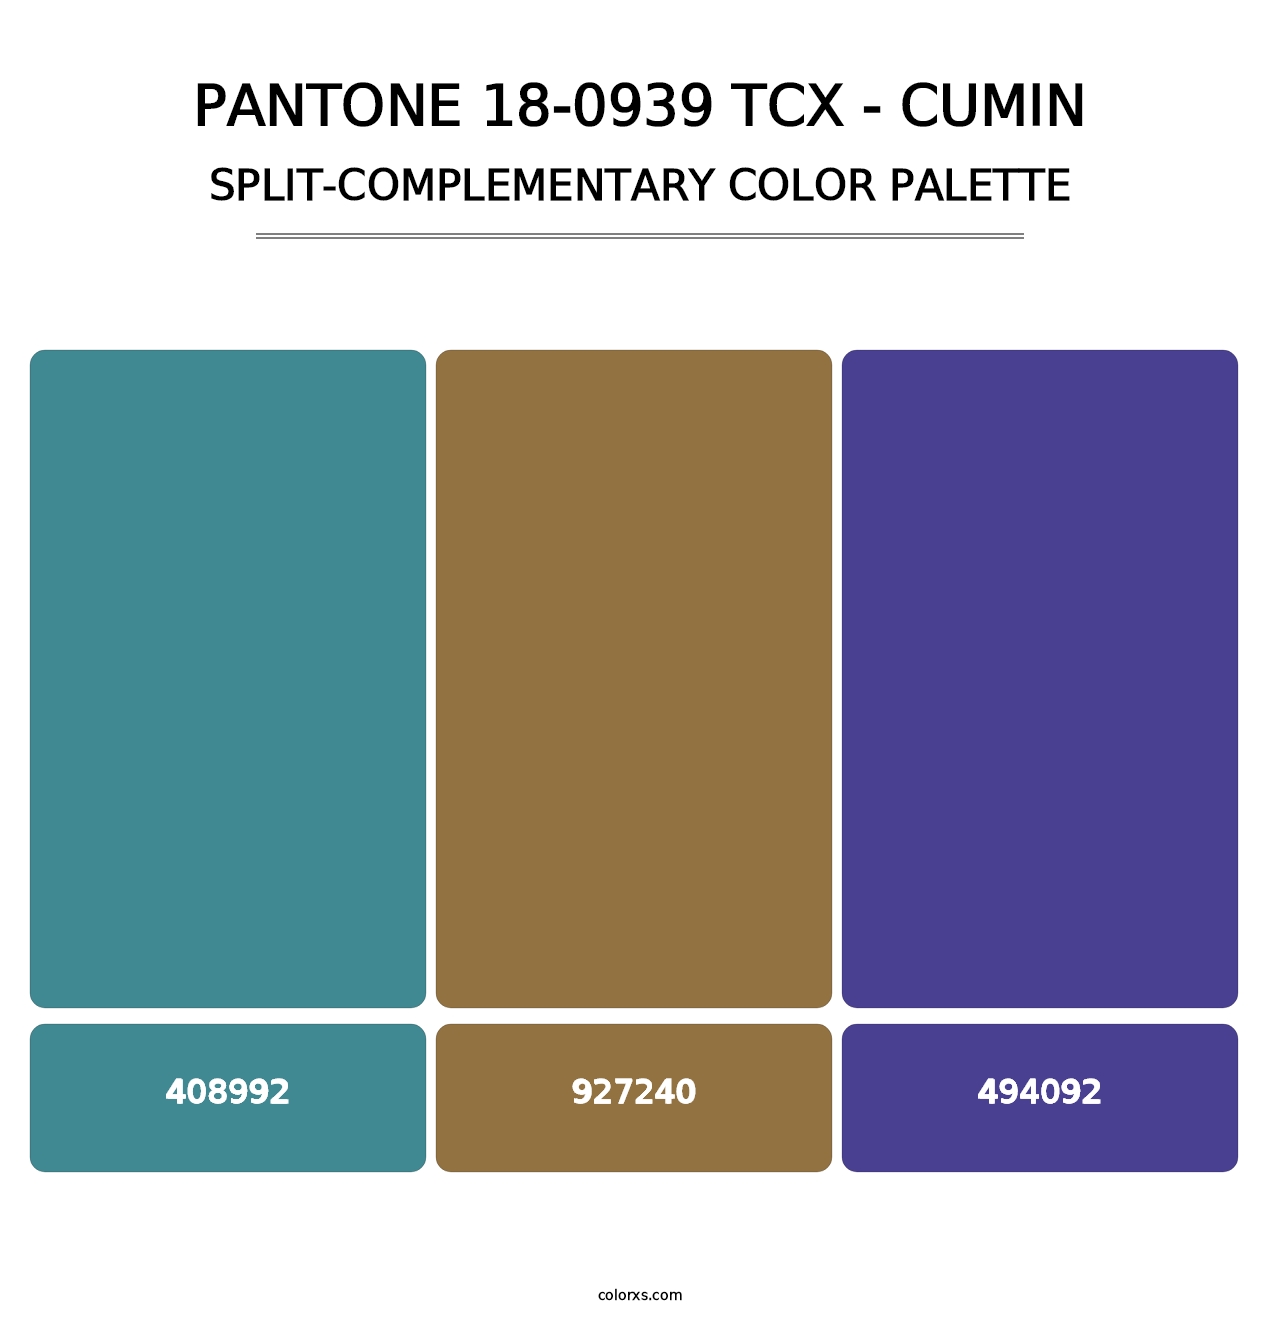 PANTONE 18-0939 TCX - Cumin - Split-Complementary Color Palette